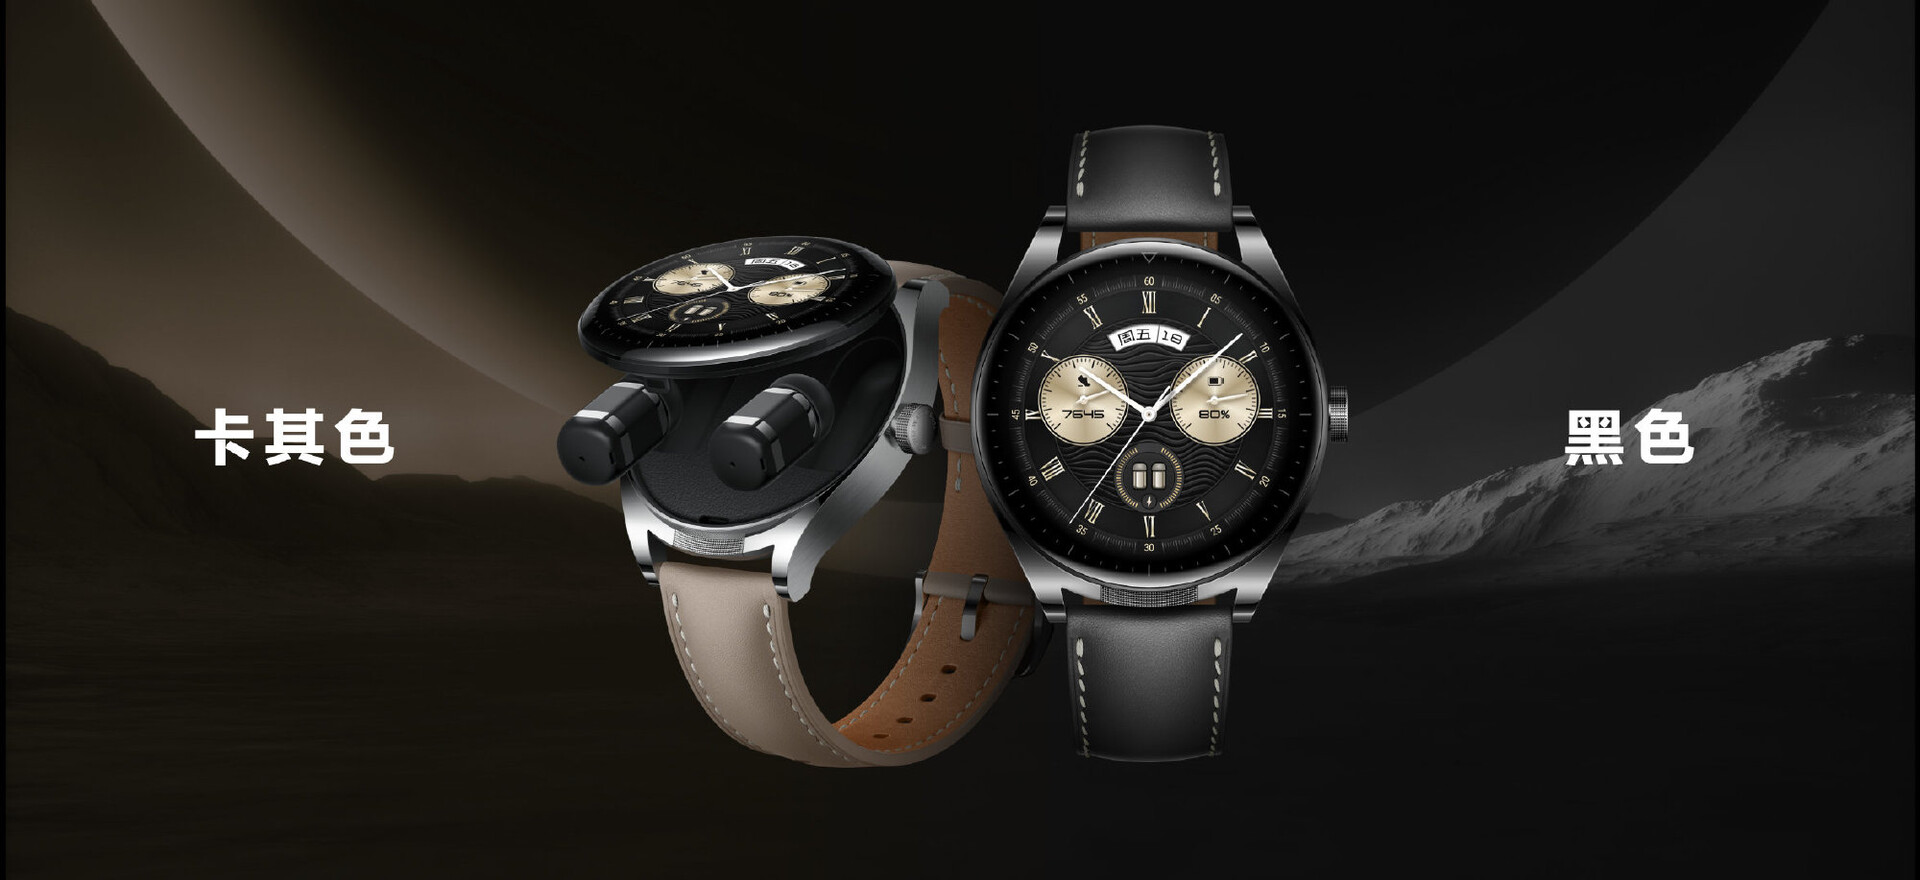 Huawei Watch Buds vorgestellt: Huawei verstaut Ohrhörer in schicker  Smartwatch mit aufklappbarem AMOLED-Display - Notebookcheck.com News